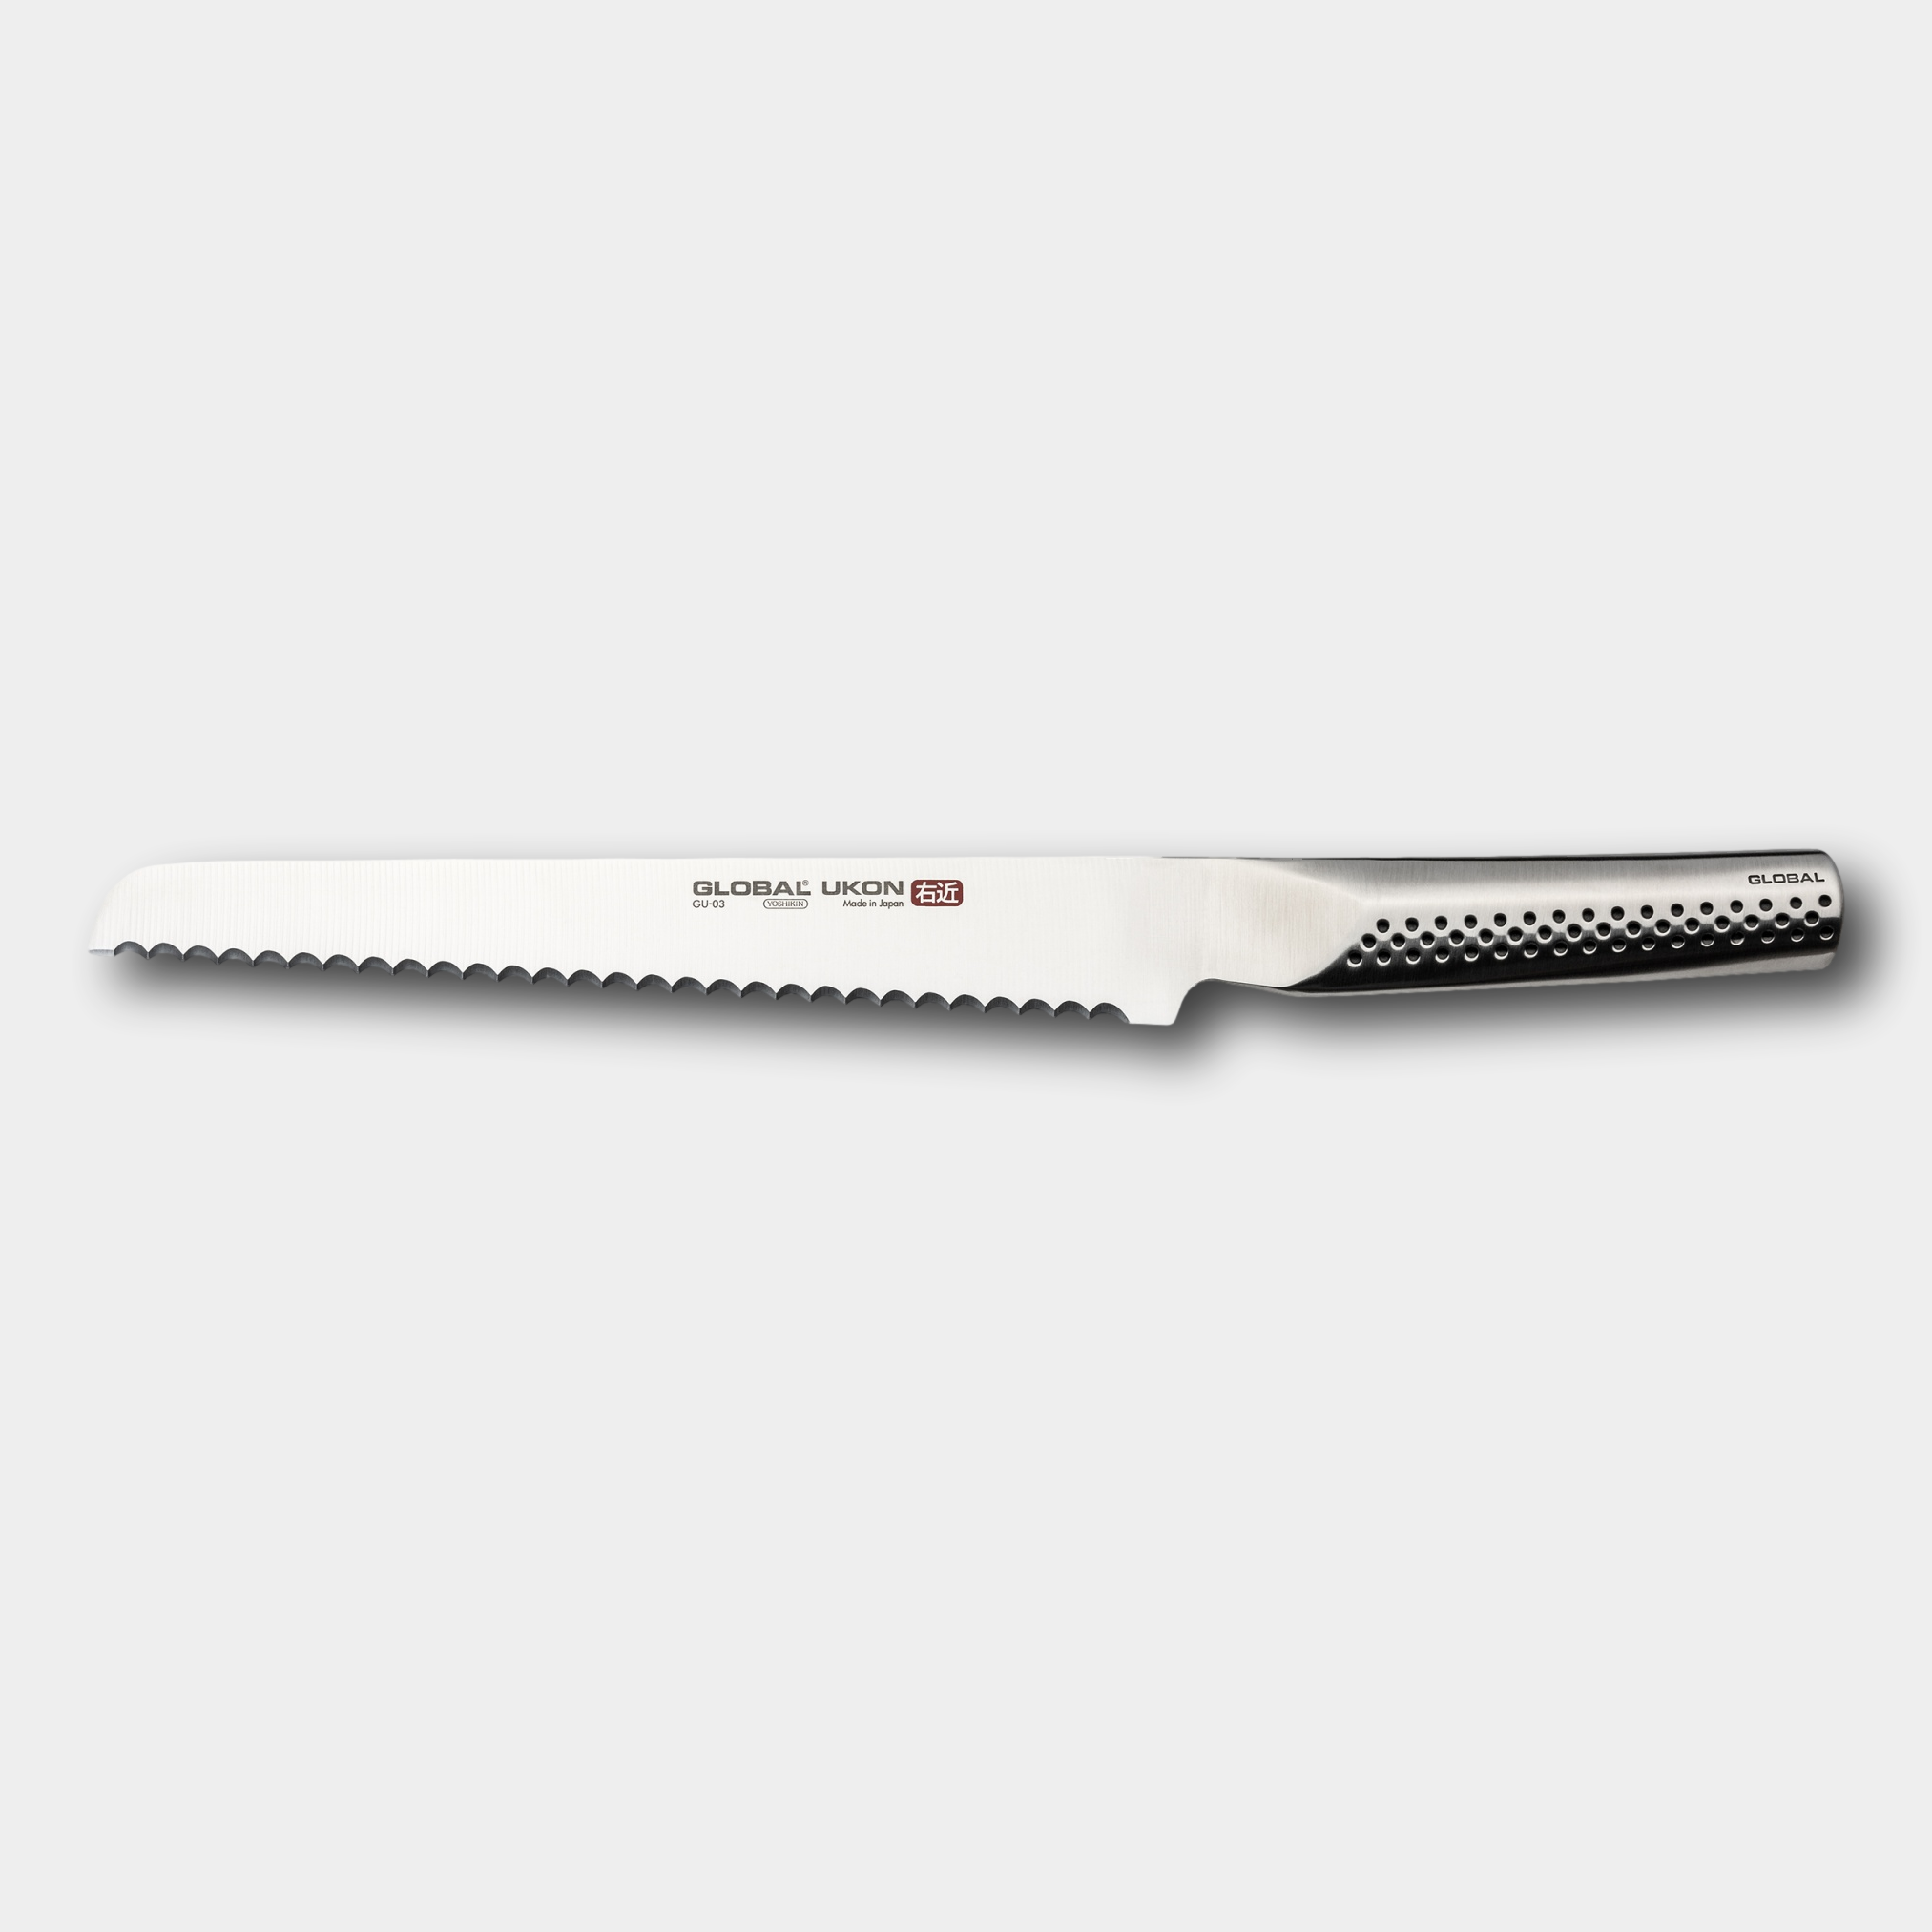 Global UKON Bread Knife 22cm